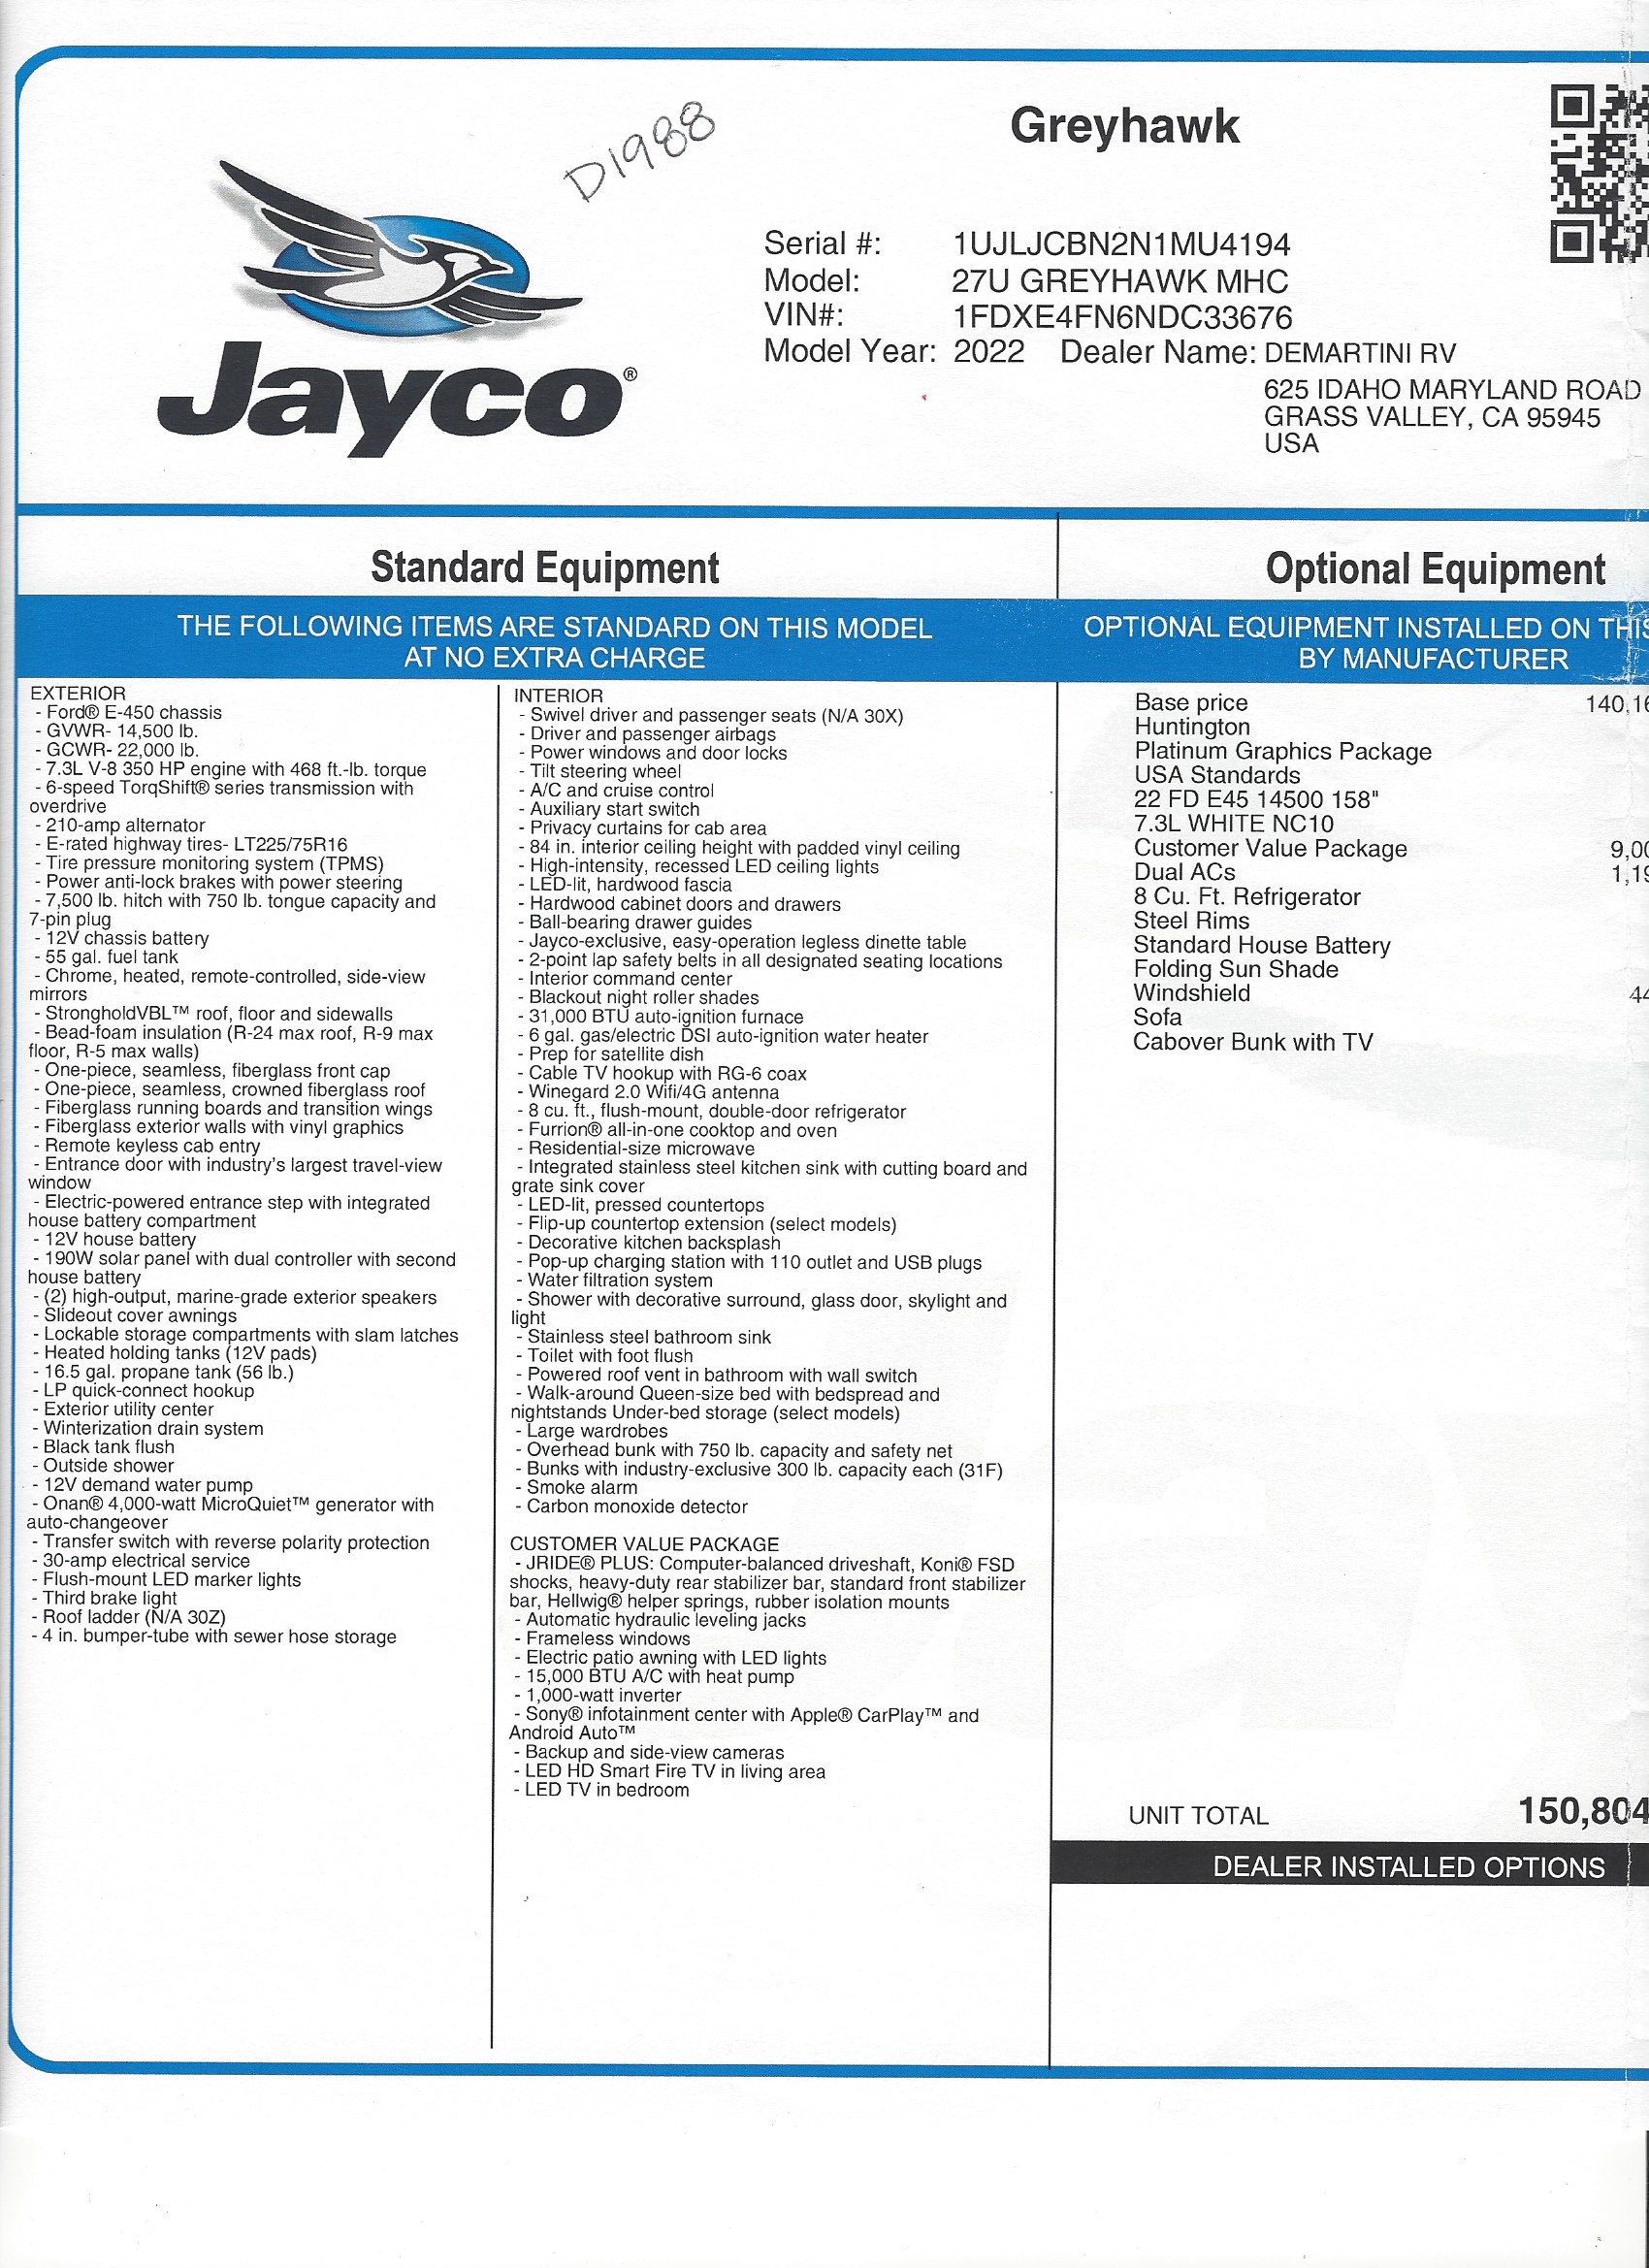 2022 Jayco Greyhawk 27U MSRP Sheet